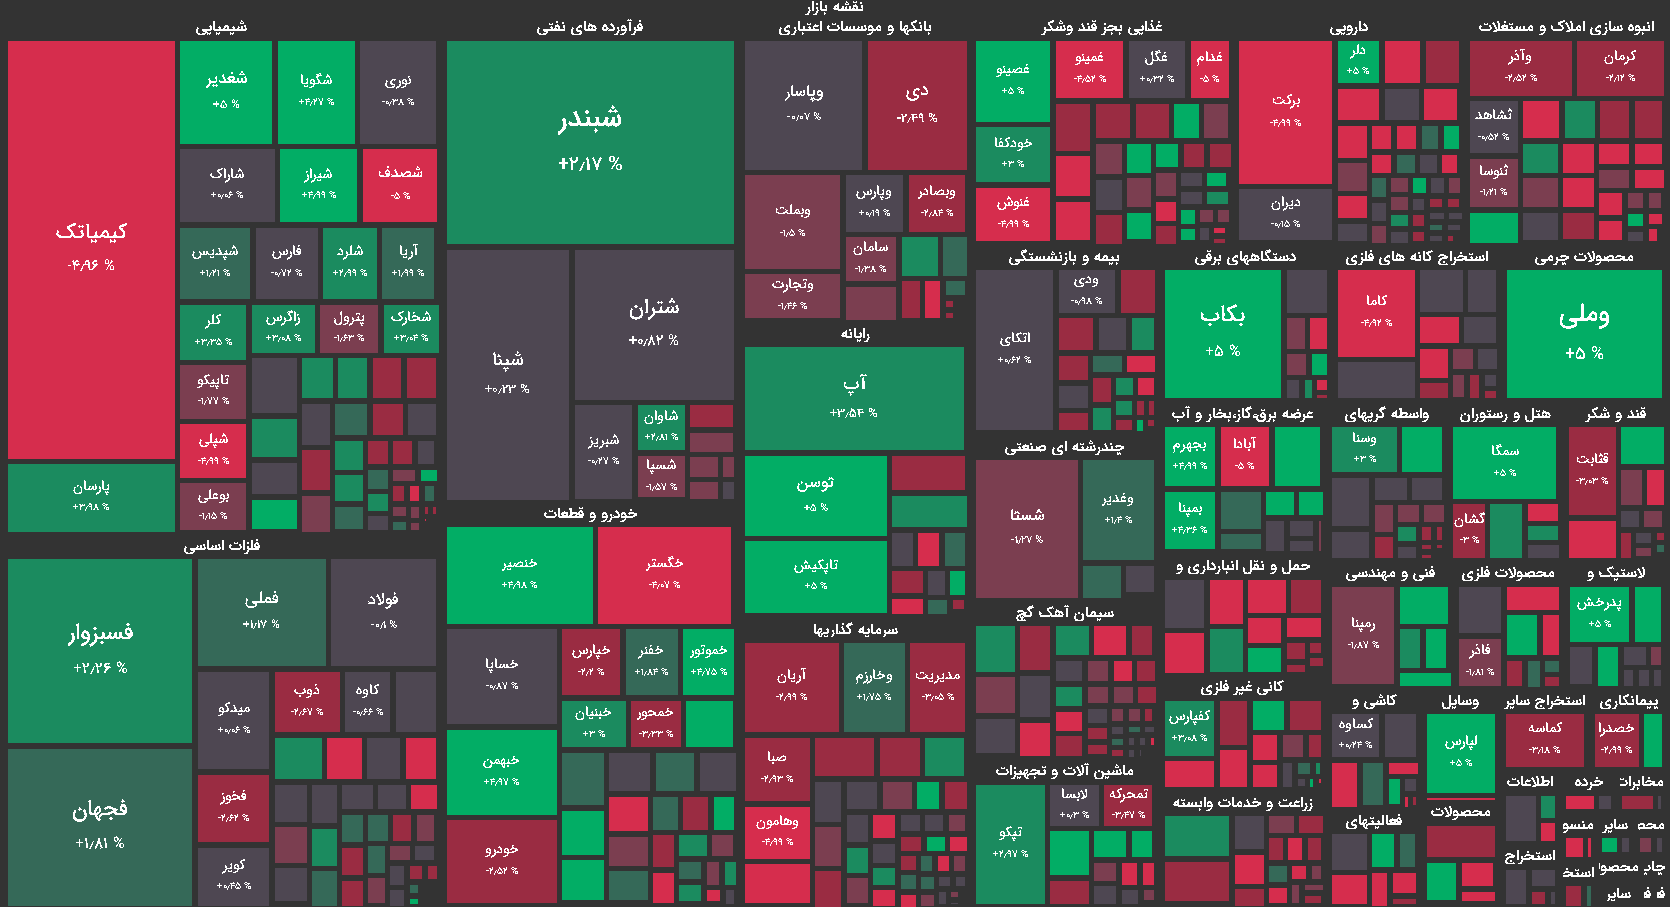 نقشه بازار بورس امروز - سه شنبه 6 مهر